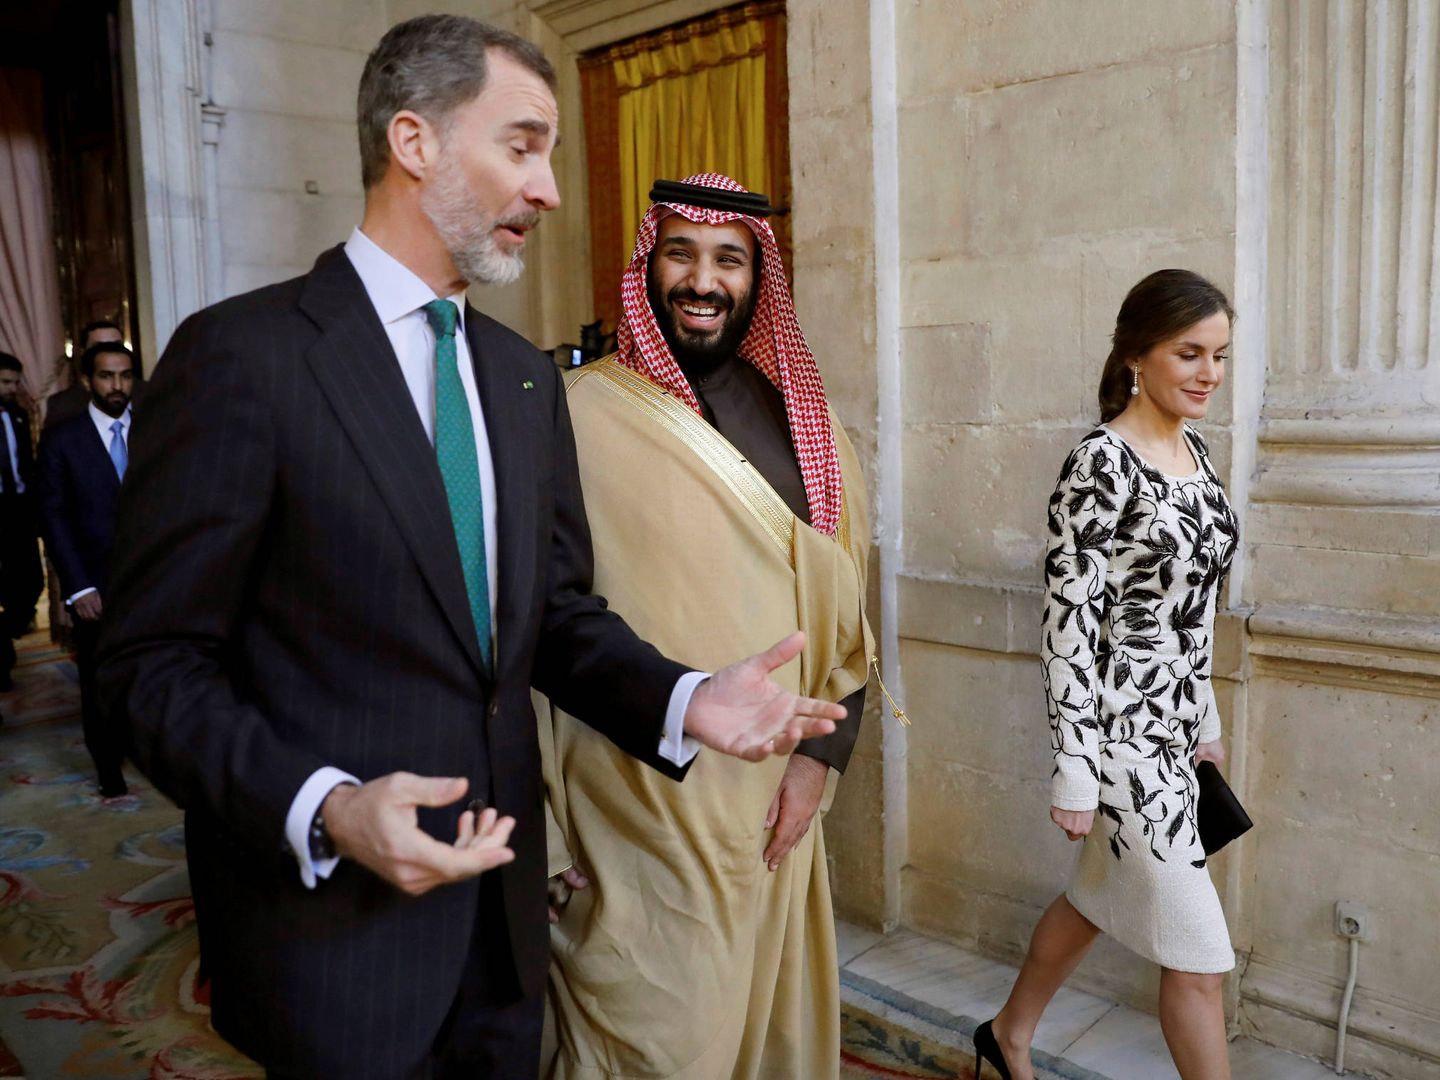 El rey Felipe, la reina Letizia y Mohamed bin Salman antes de un almuerzo en el Palacio Real, el 12 de abril de 2018. (Reuters)